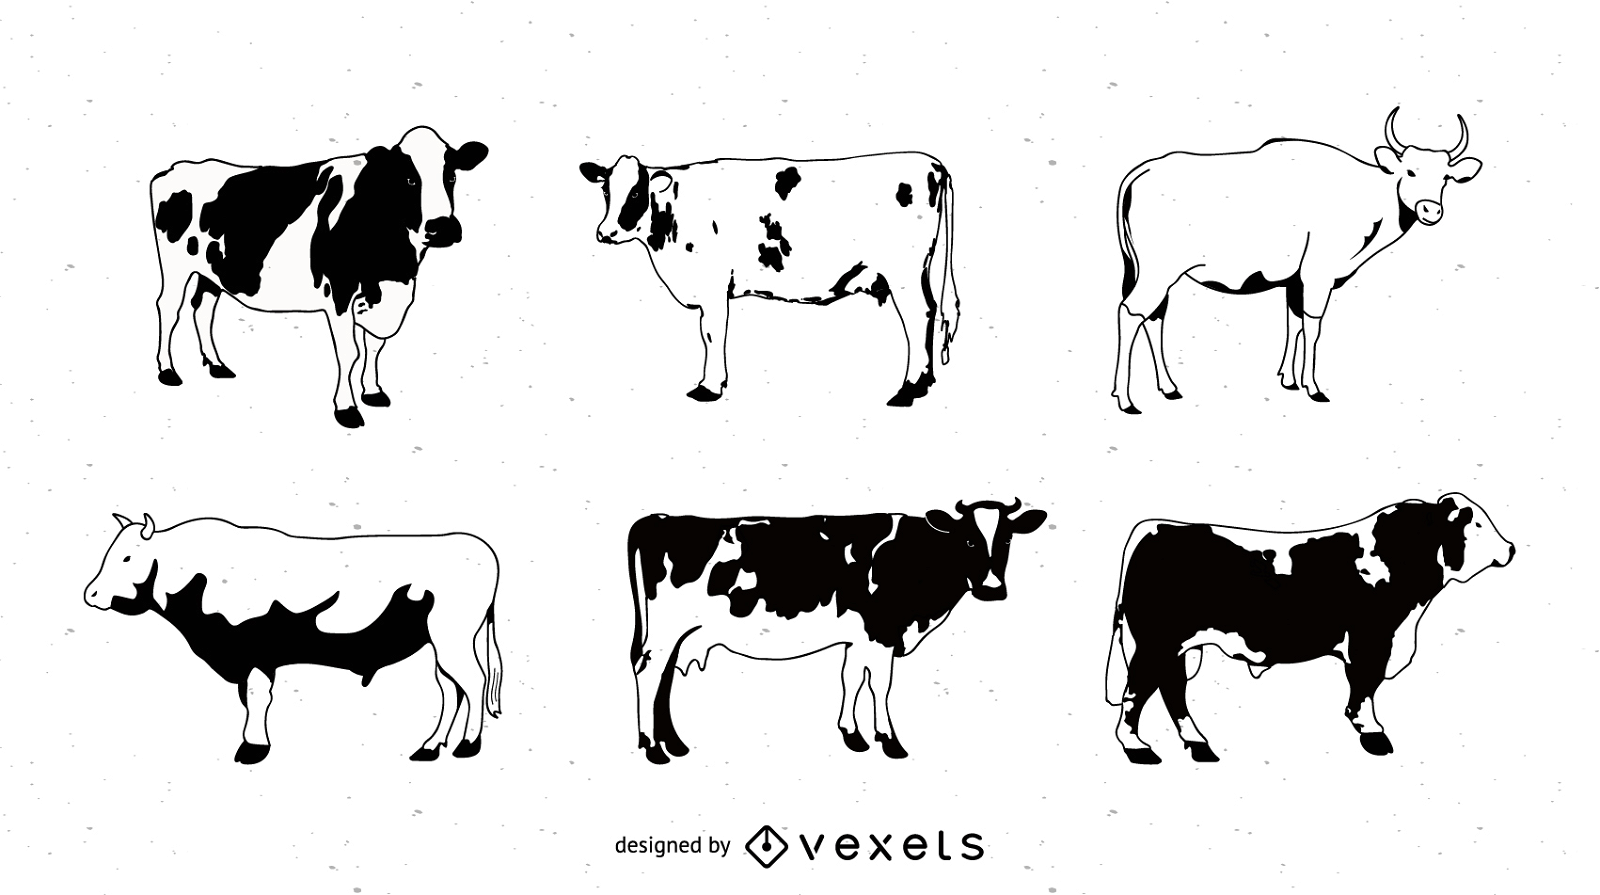 Schwarzweiss-Bilderserie eines gemalten Kuh-Vektor-Vektors